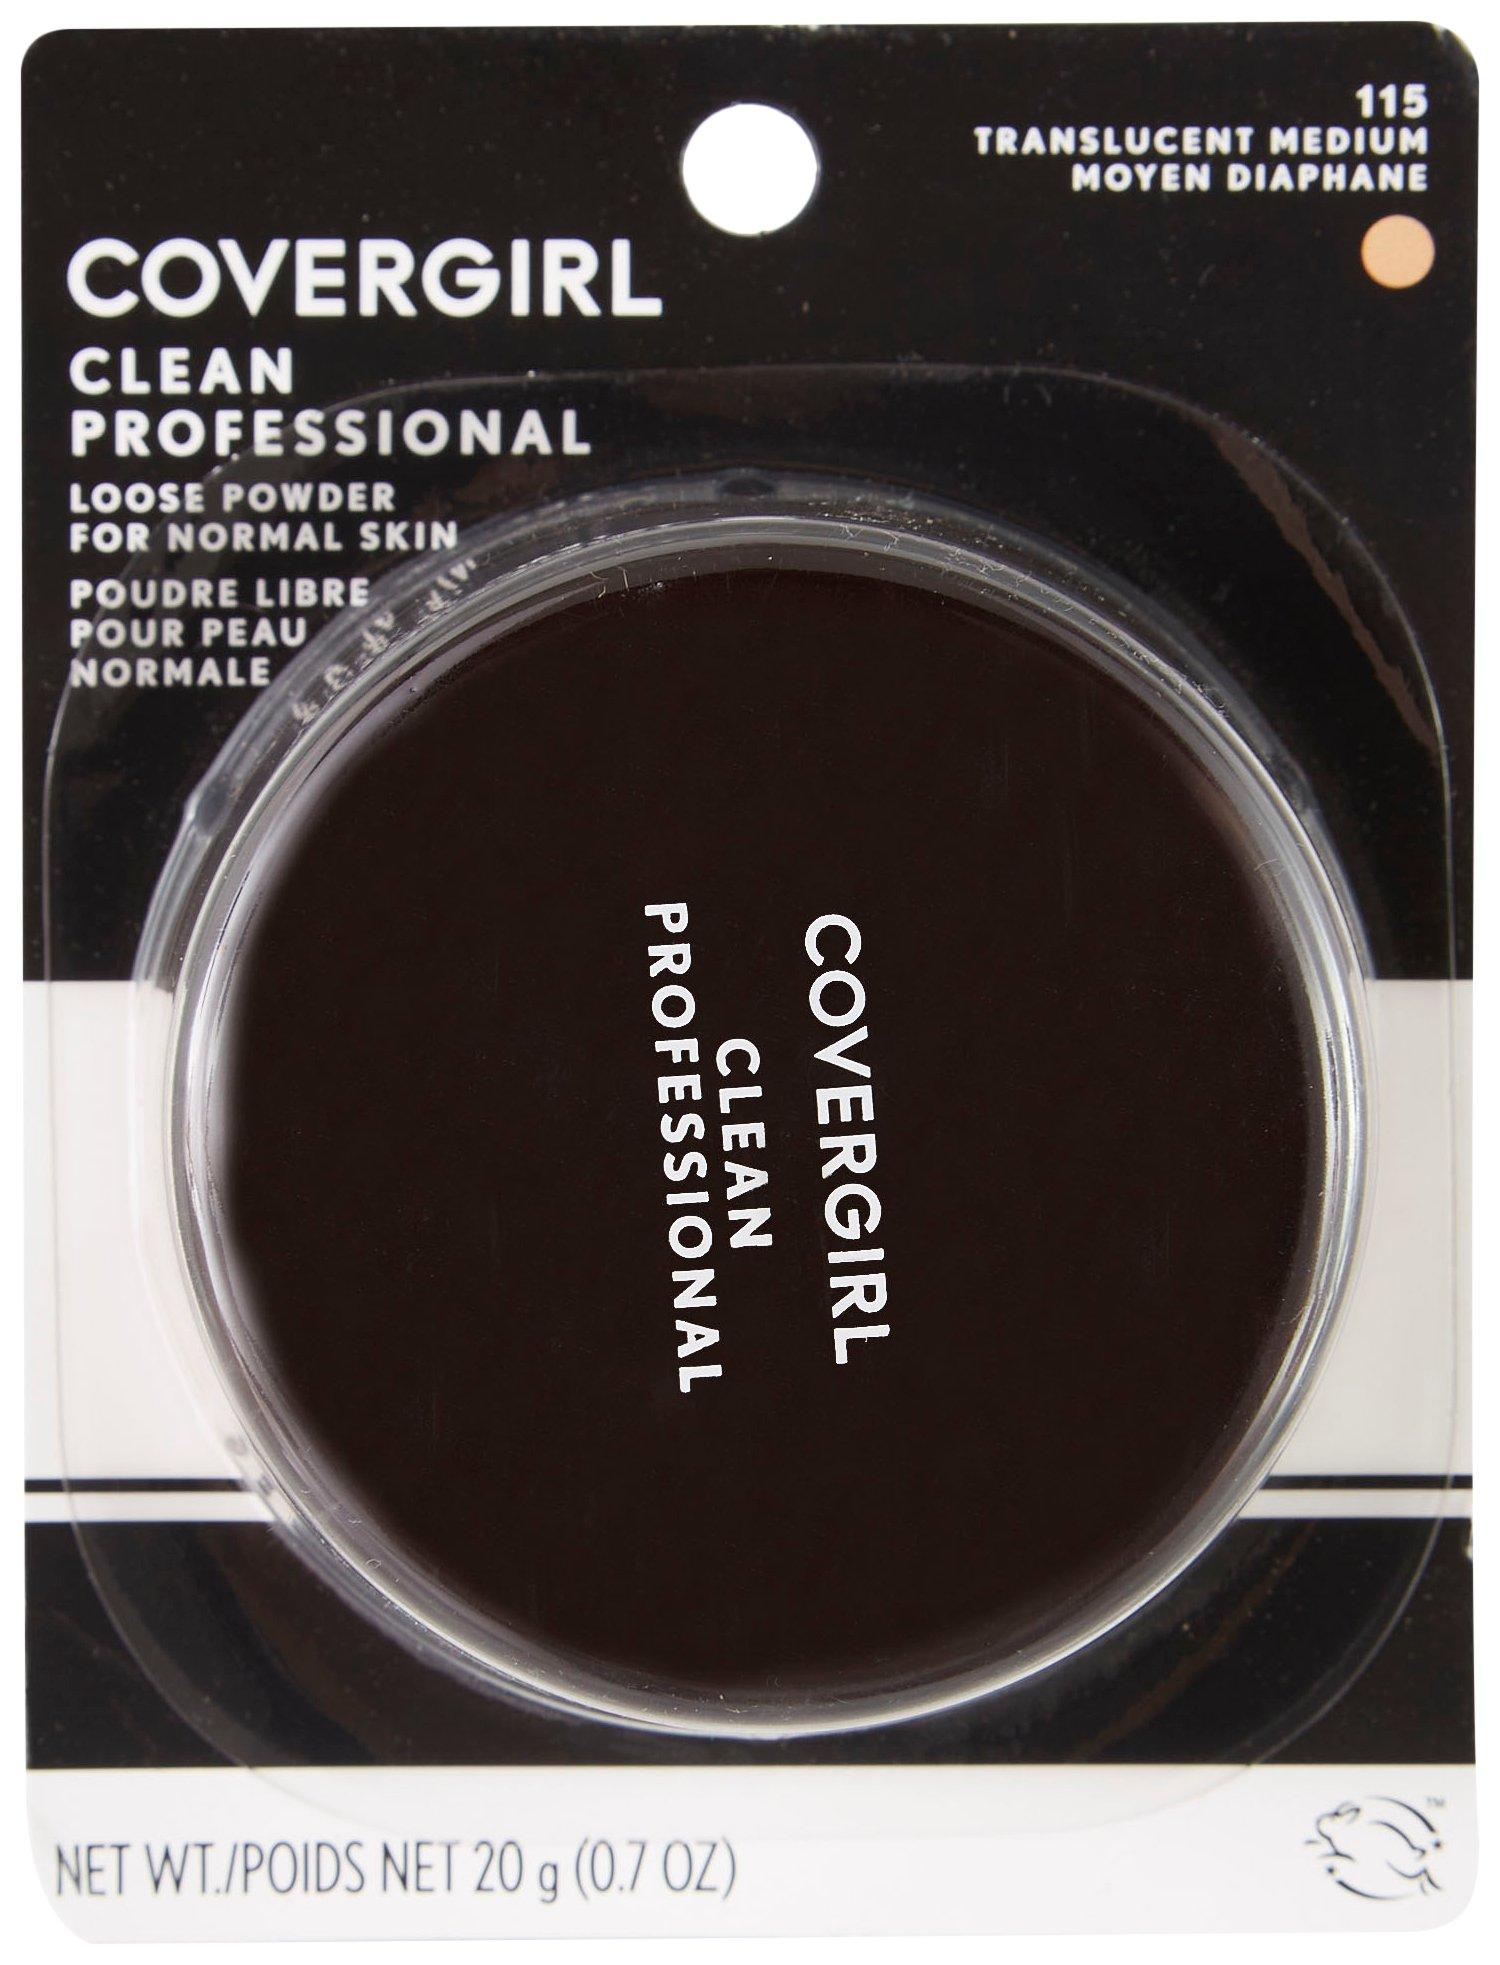 Cover Girl Translucent Medium Clean Professional Powder